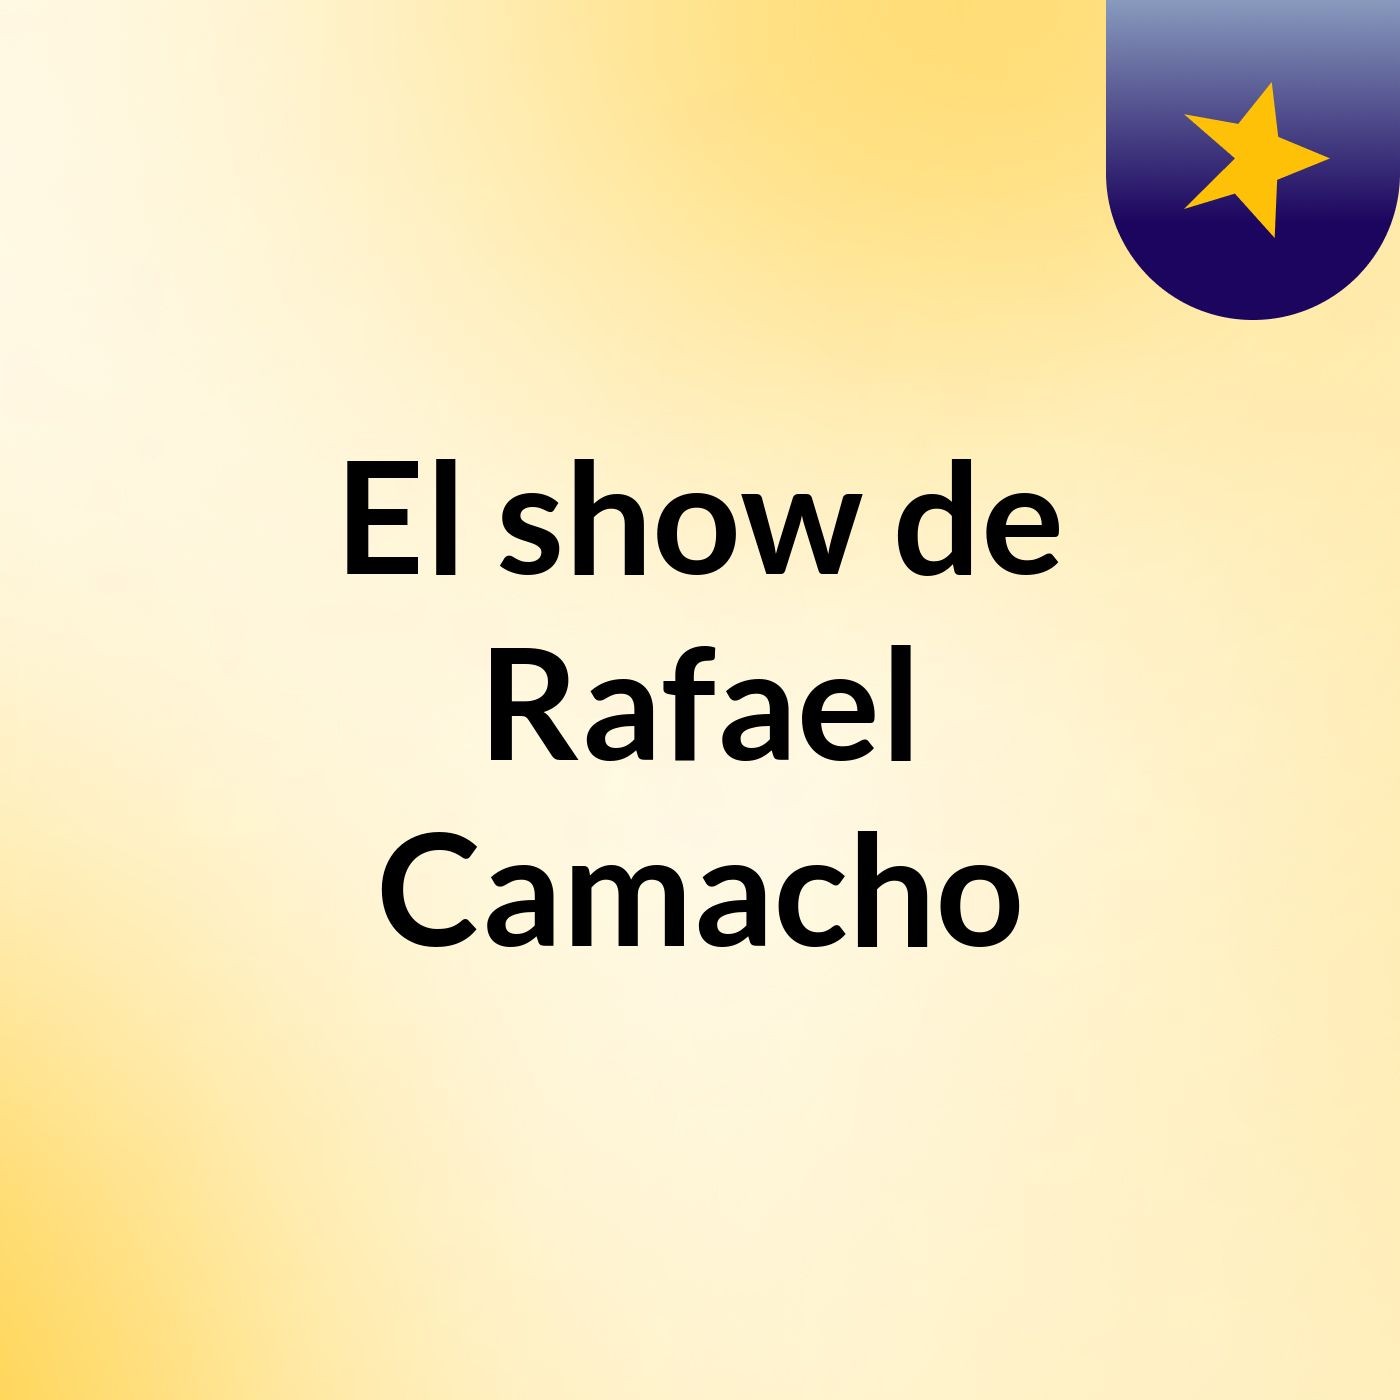 El show de Rafael Camacho